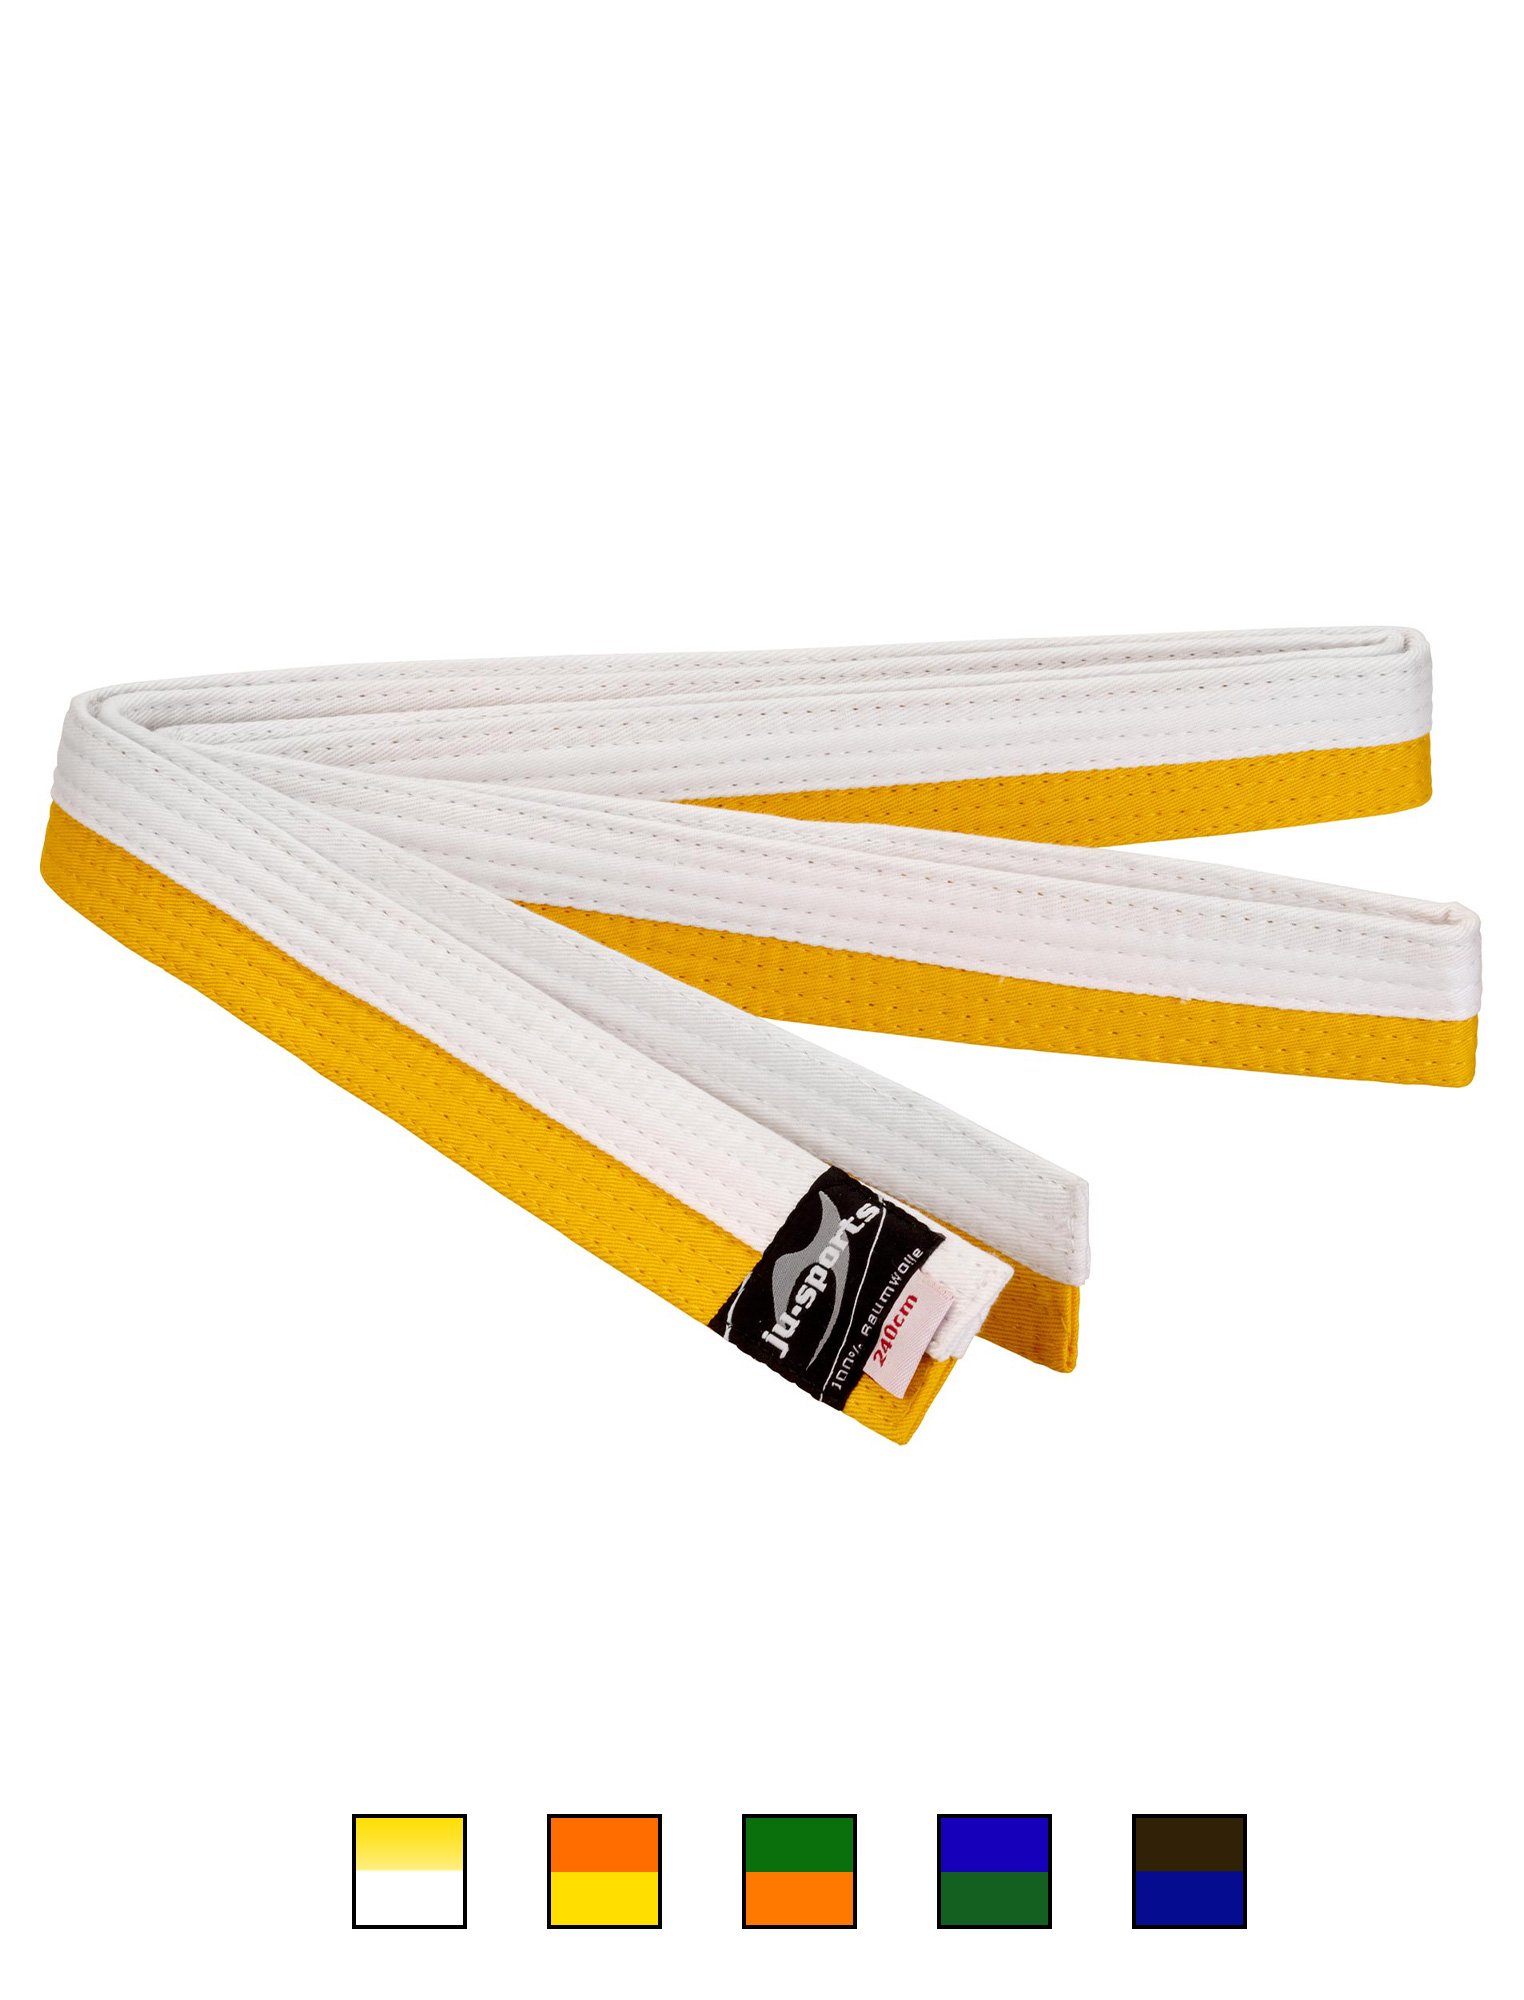 Ju-Sports budo belt white/yellow